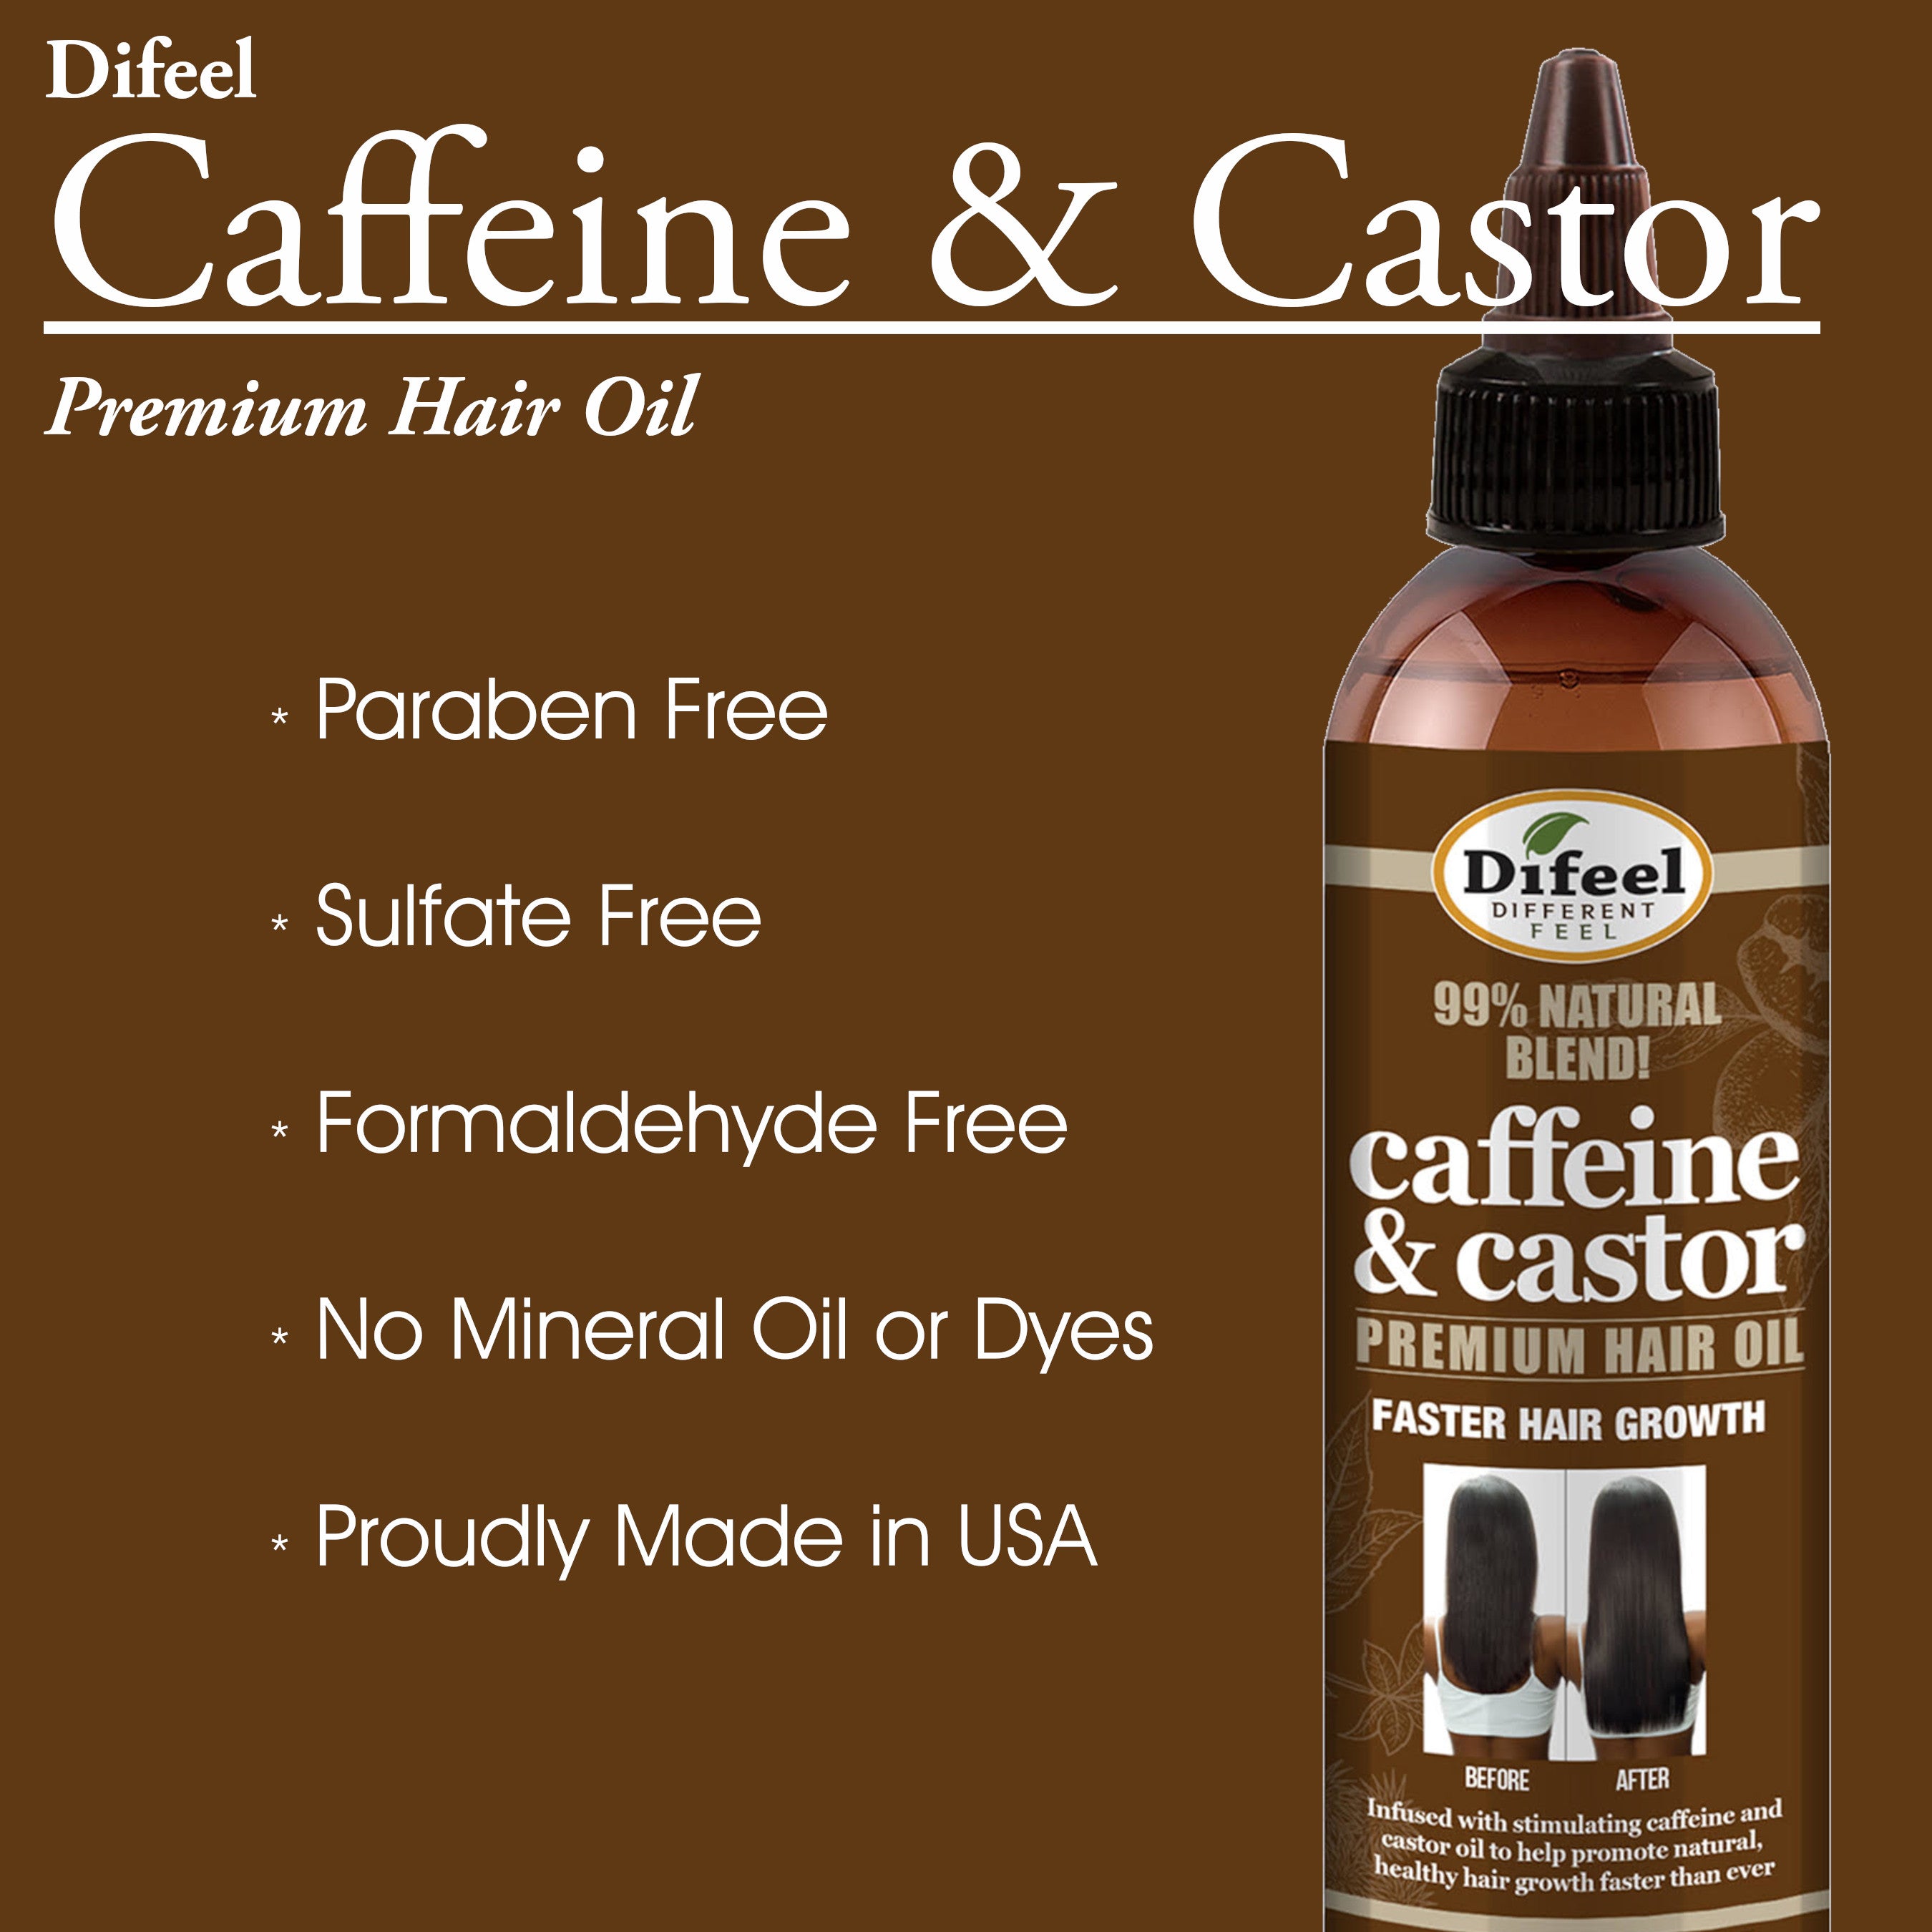 Difeel 99% Premium Natural Hair Oil Blend- Caffeine & Castor Faster Hair Growth Hair Oil 8 oz.